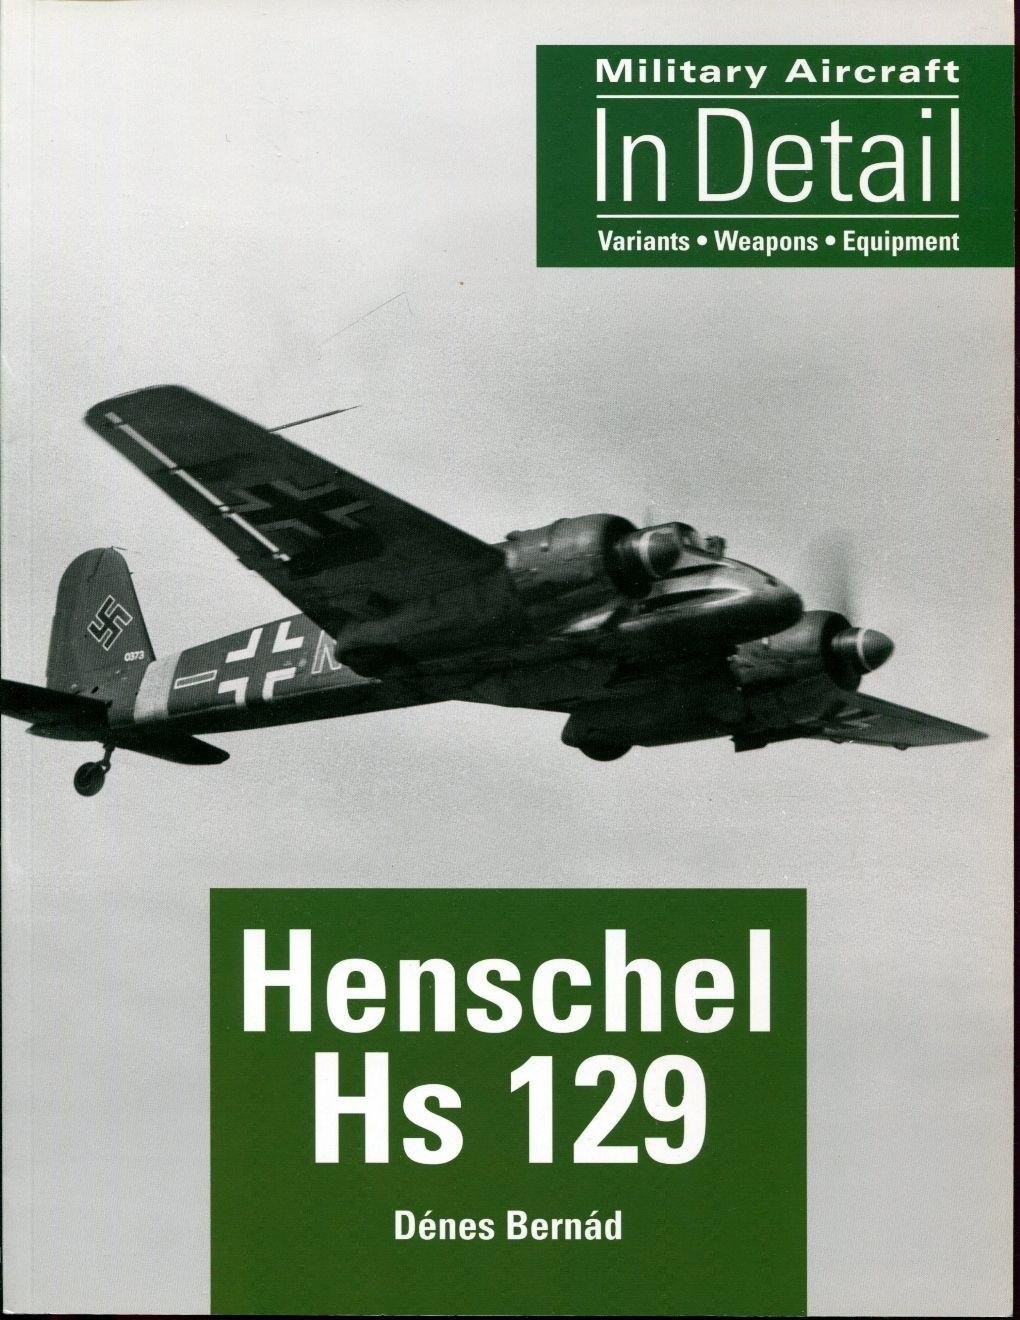 Henschel Hs129 in detail